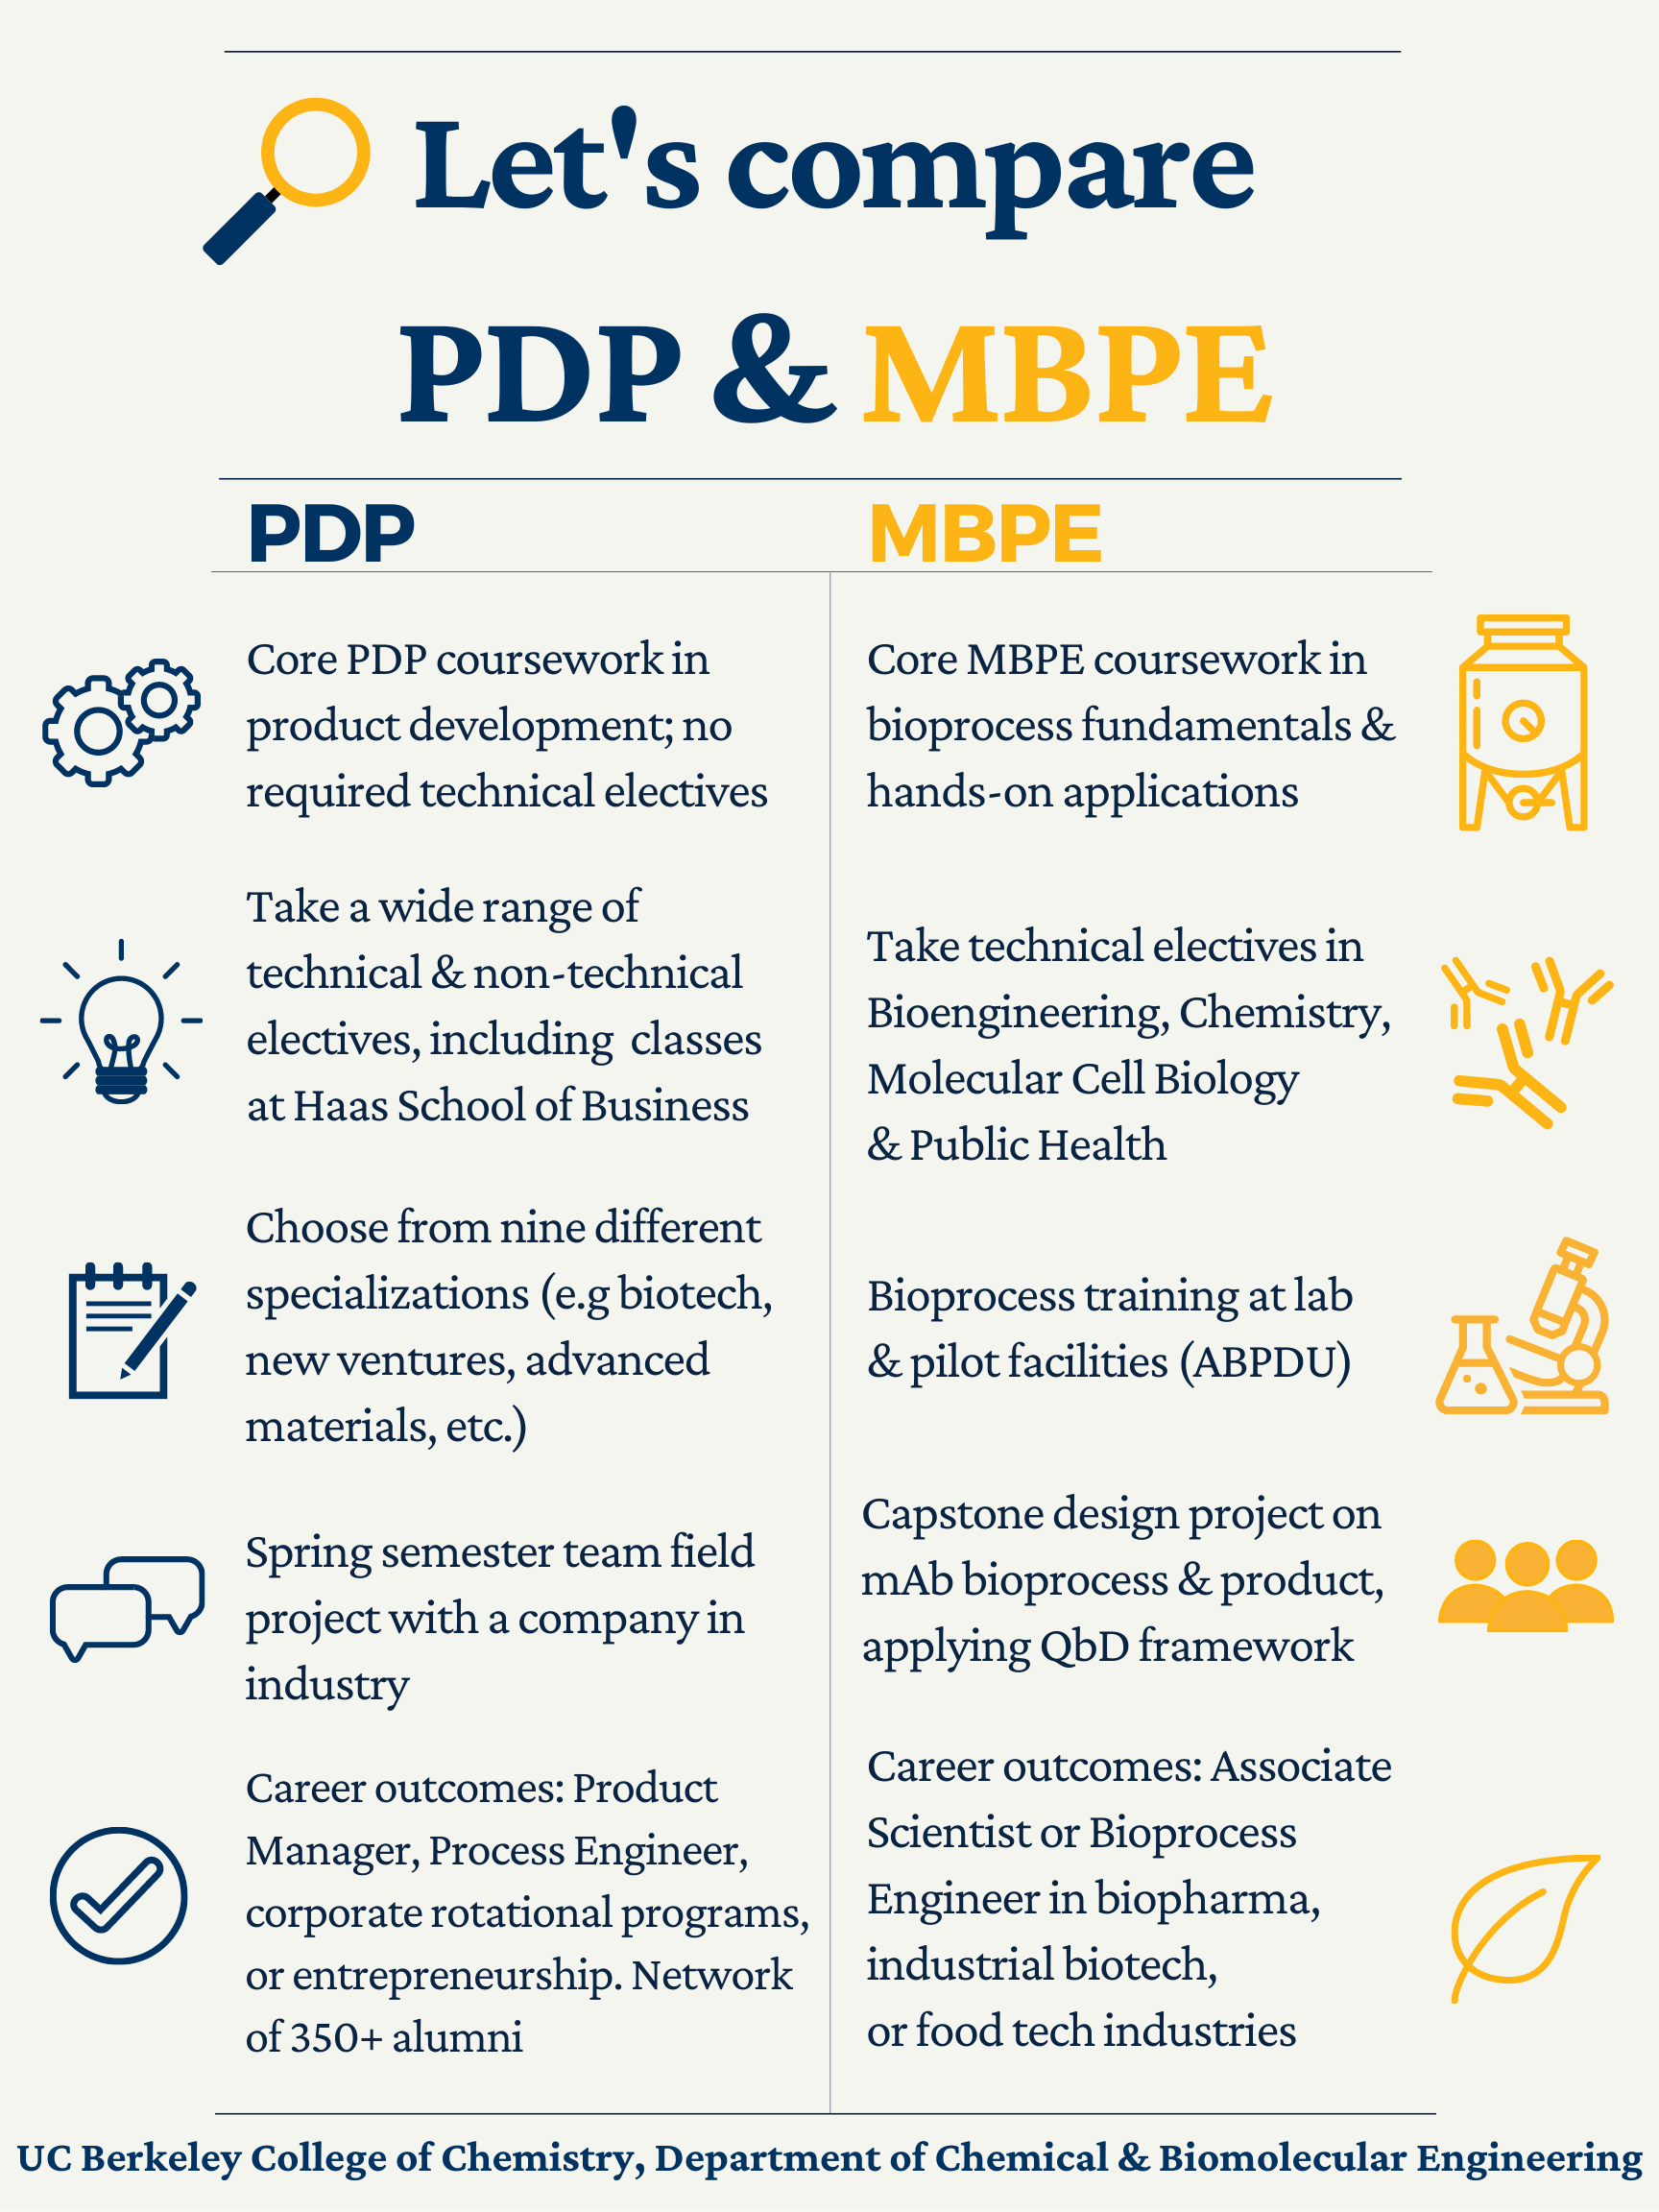 PDP MBPE Comparison